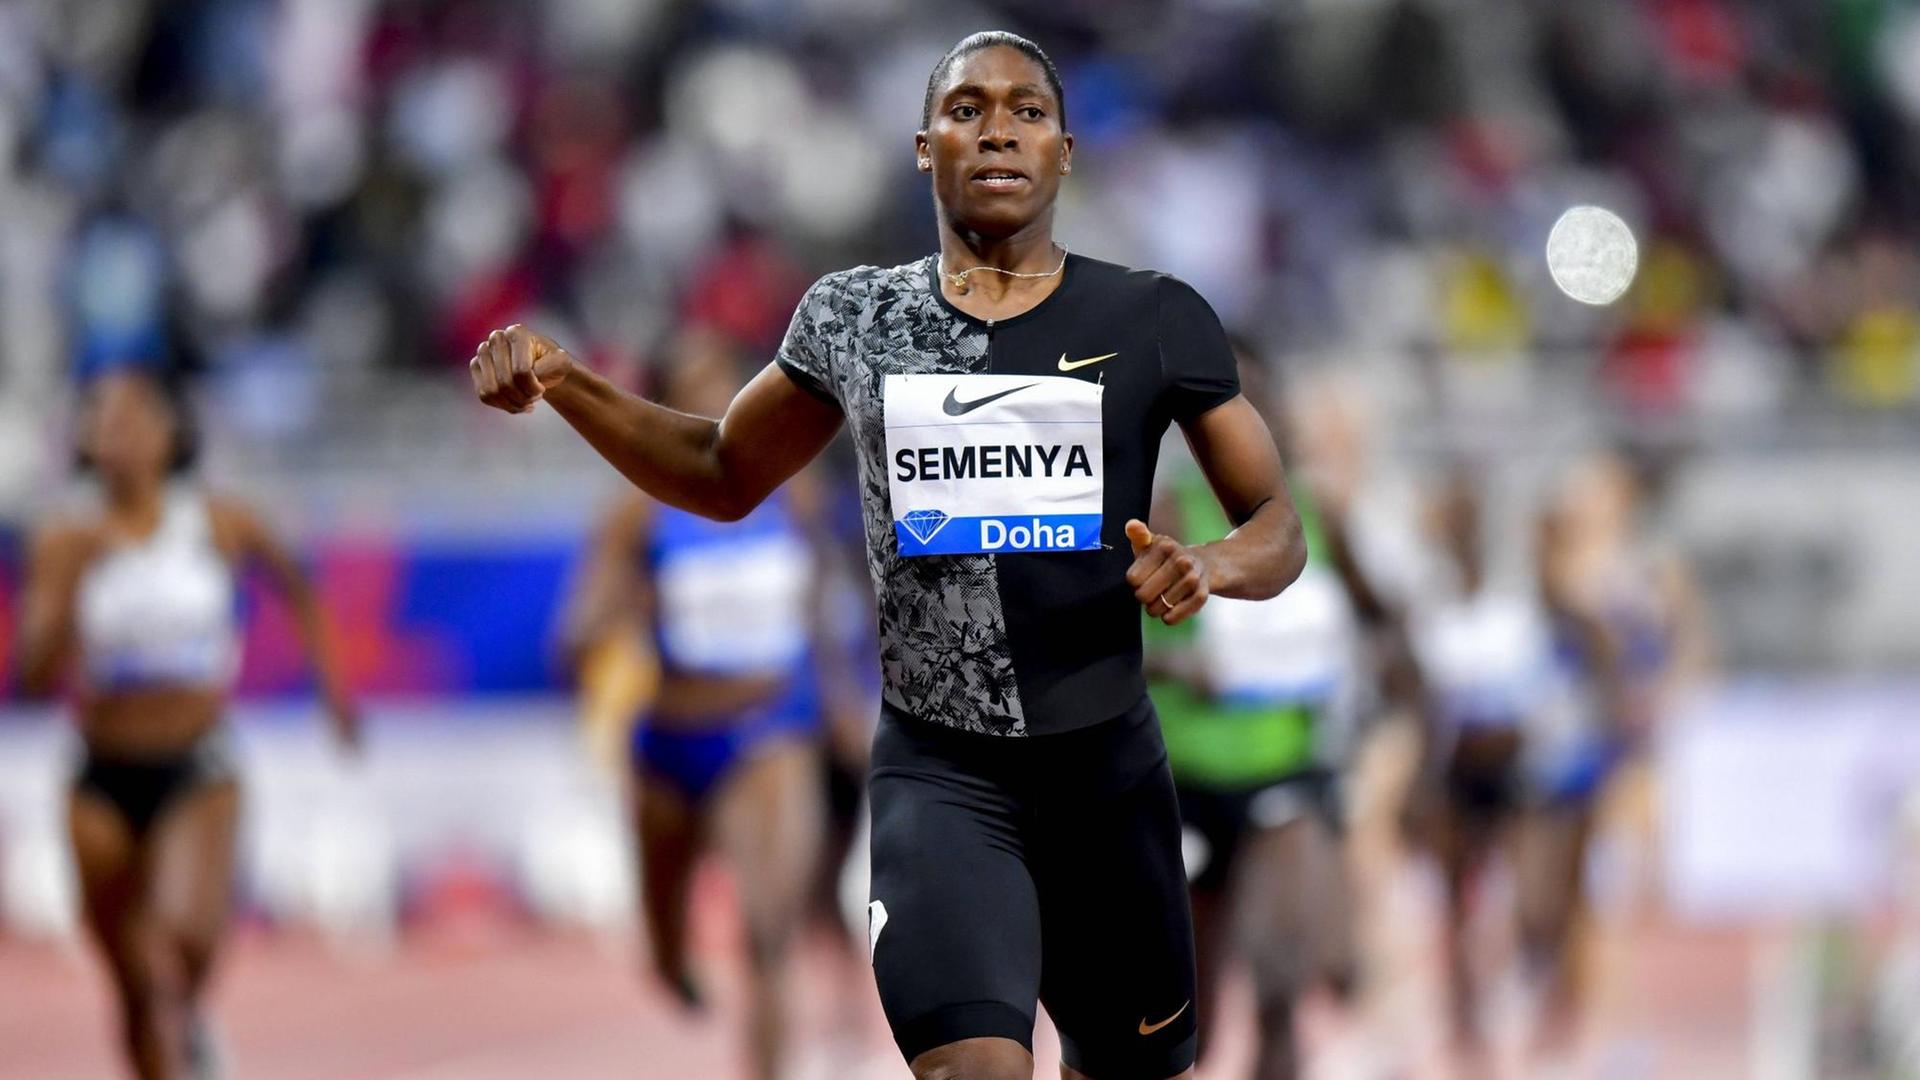 Caster Semenya nach dem Sieg des 800m-Laufs der Frauen bei der Diamond League in Doha, Katar.